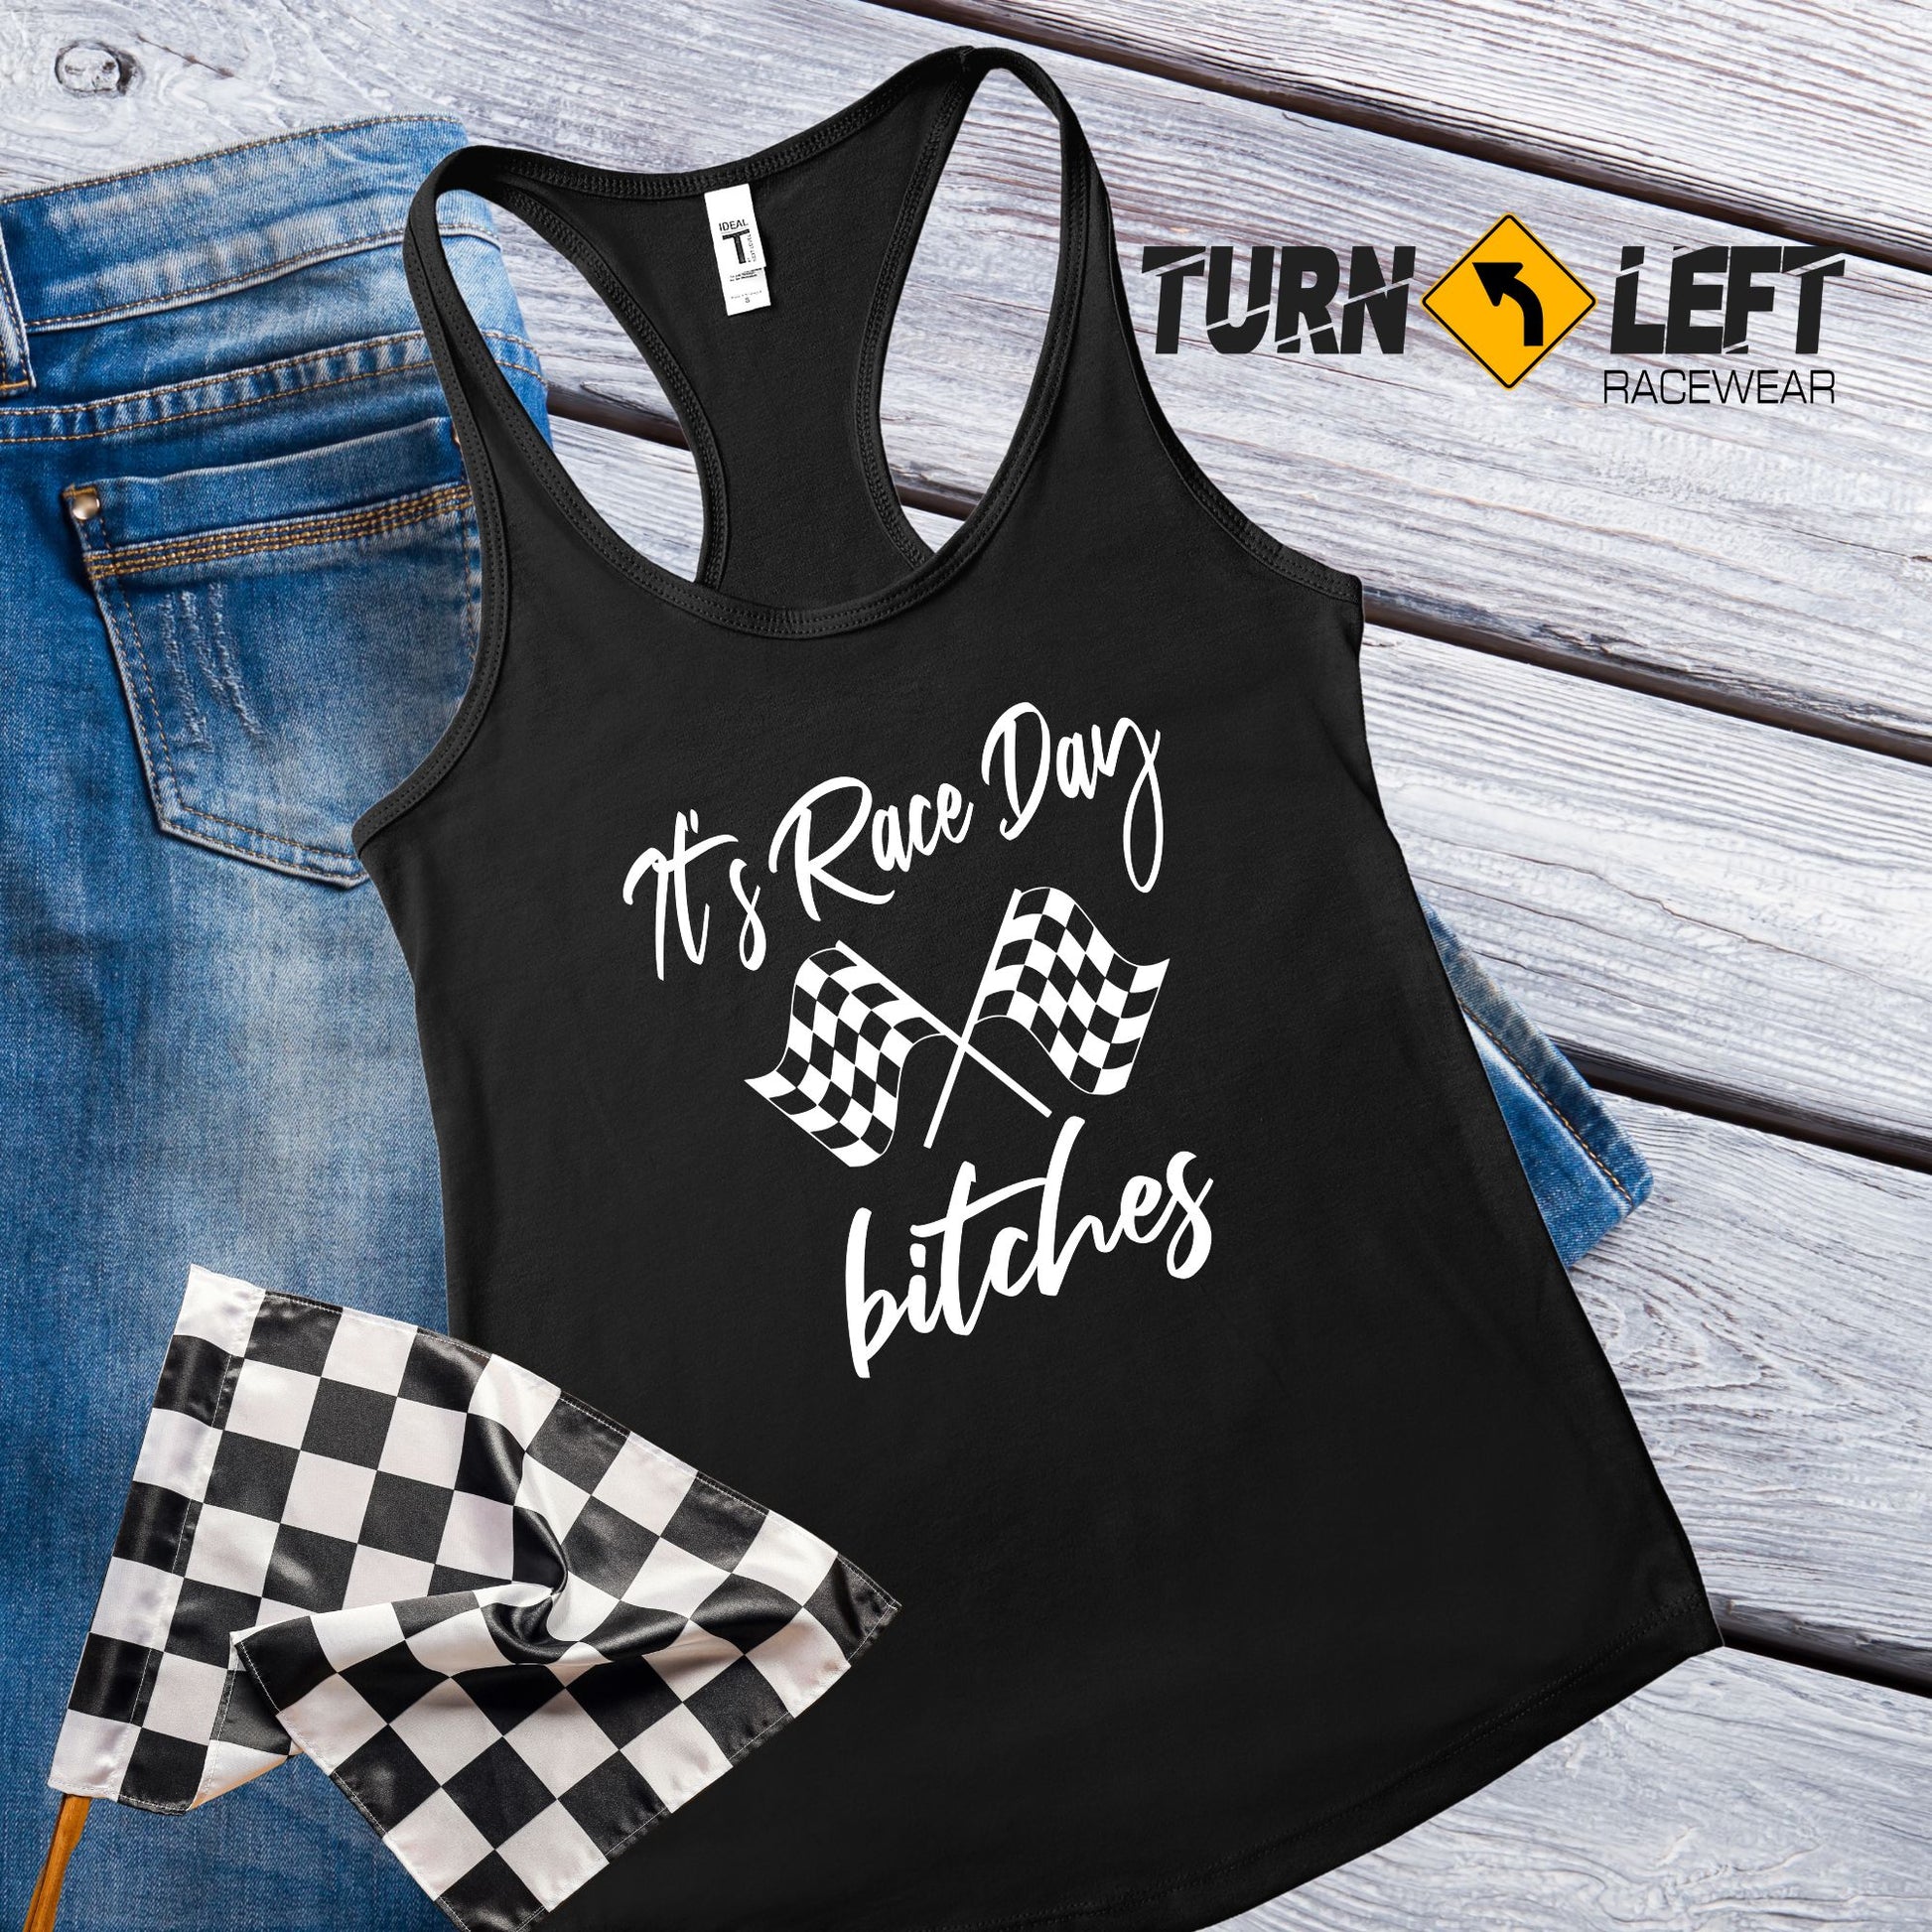 Racing quote shirts. Racing Saying shirts, It's Raceday Bitches Tank Top Women Racing Shirts. Racing Gifts For Women